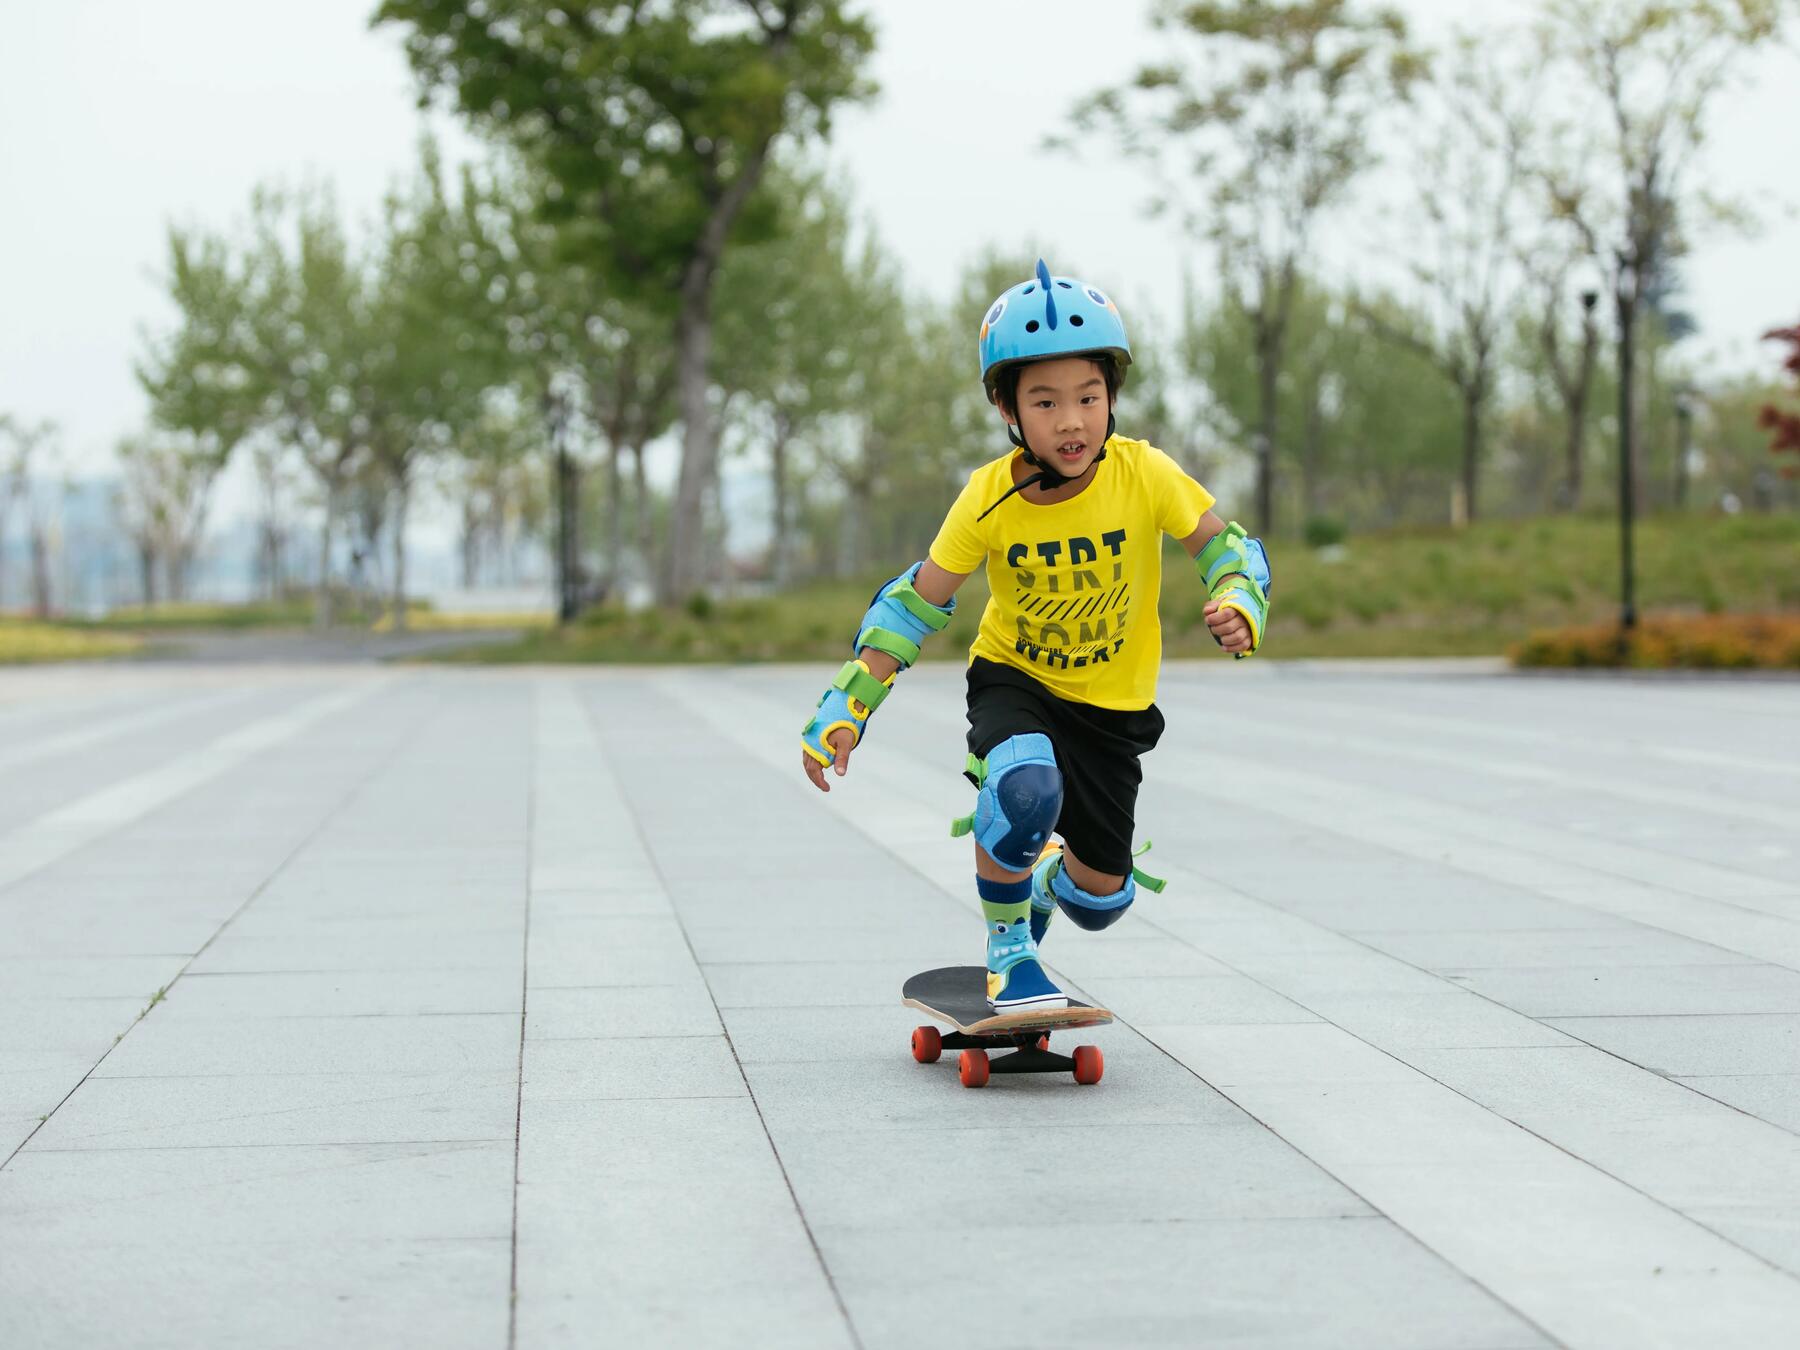 Bild von einem Kind auf einem Skateboard mit Schutzausrüstung